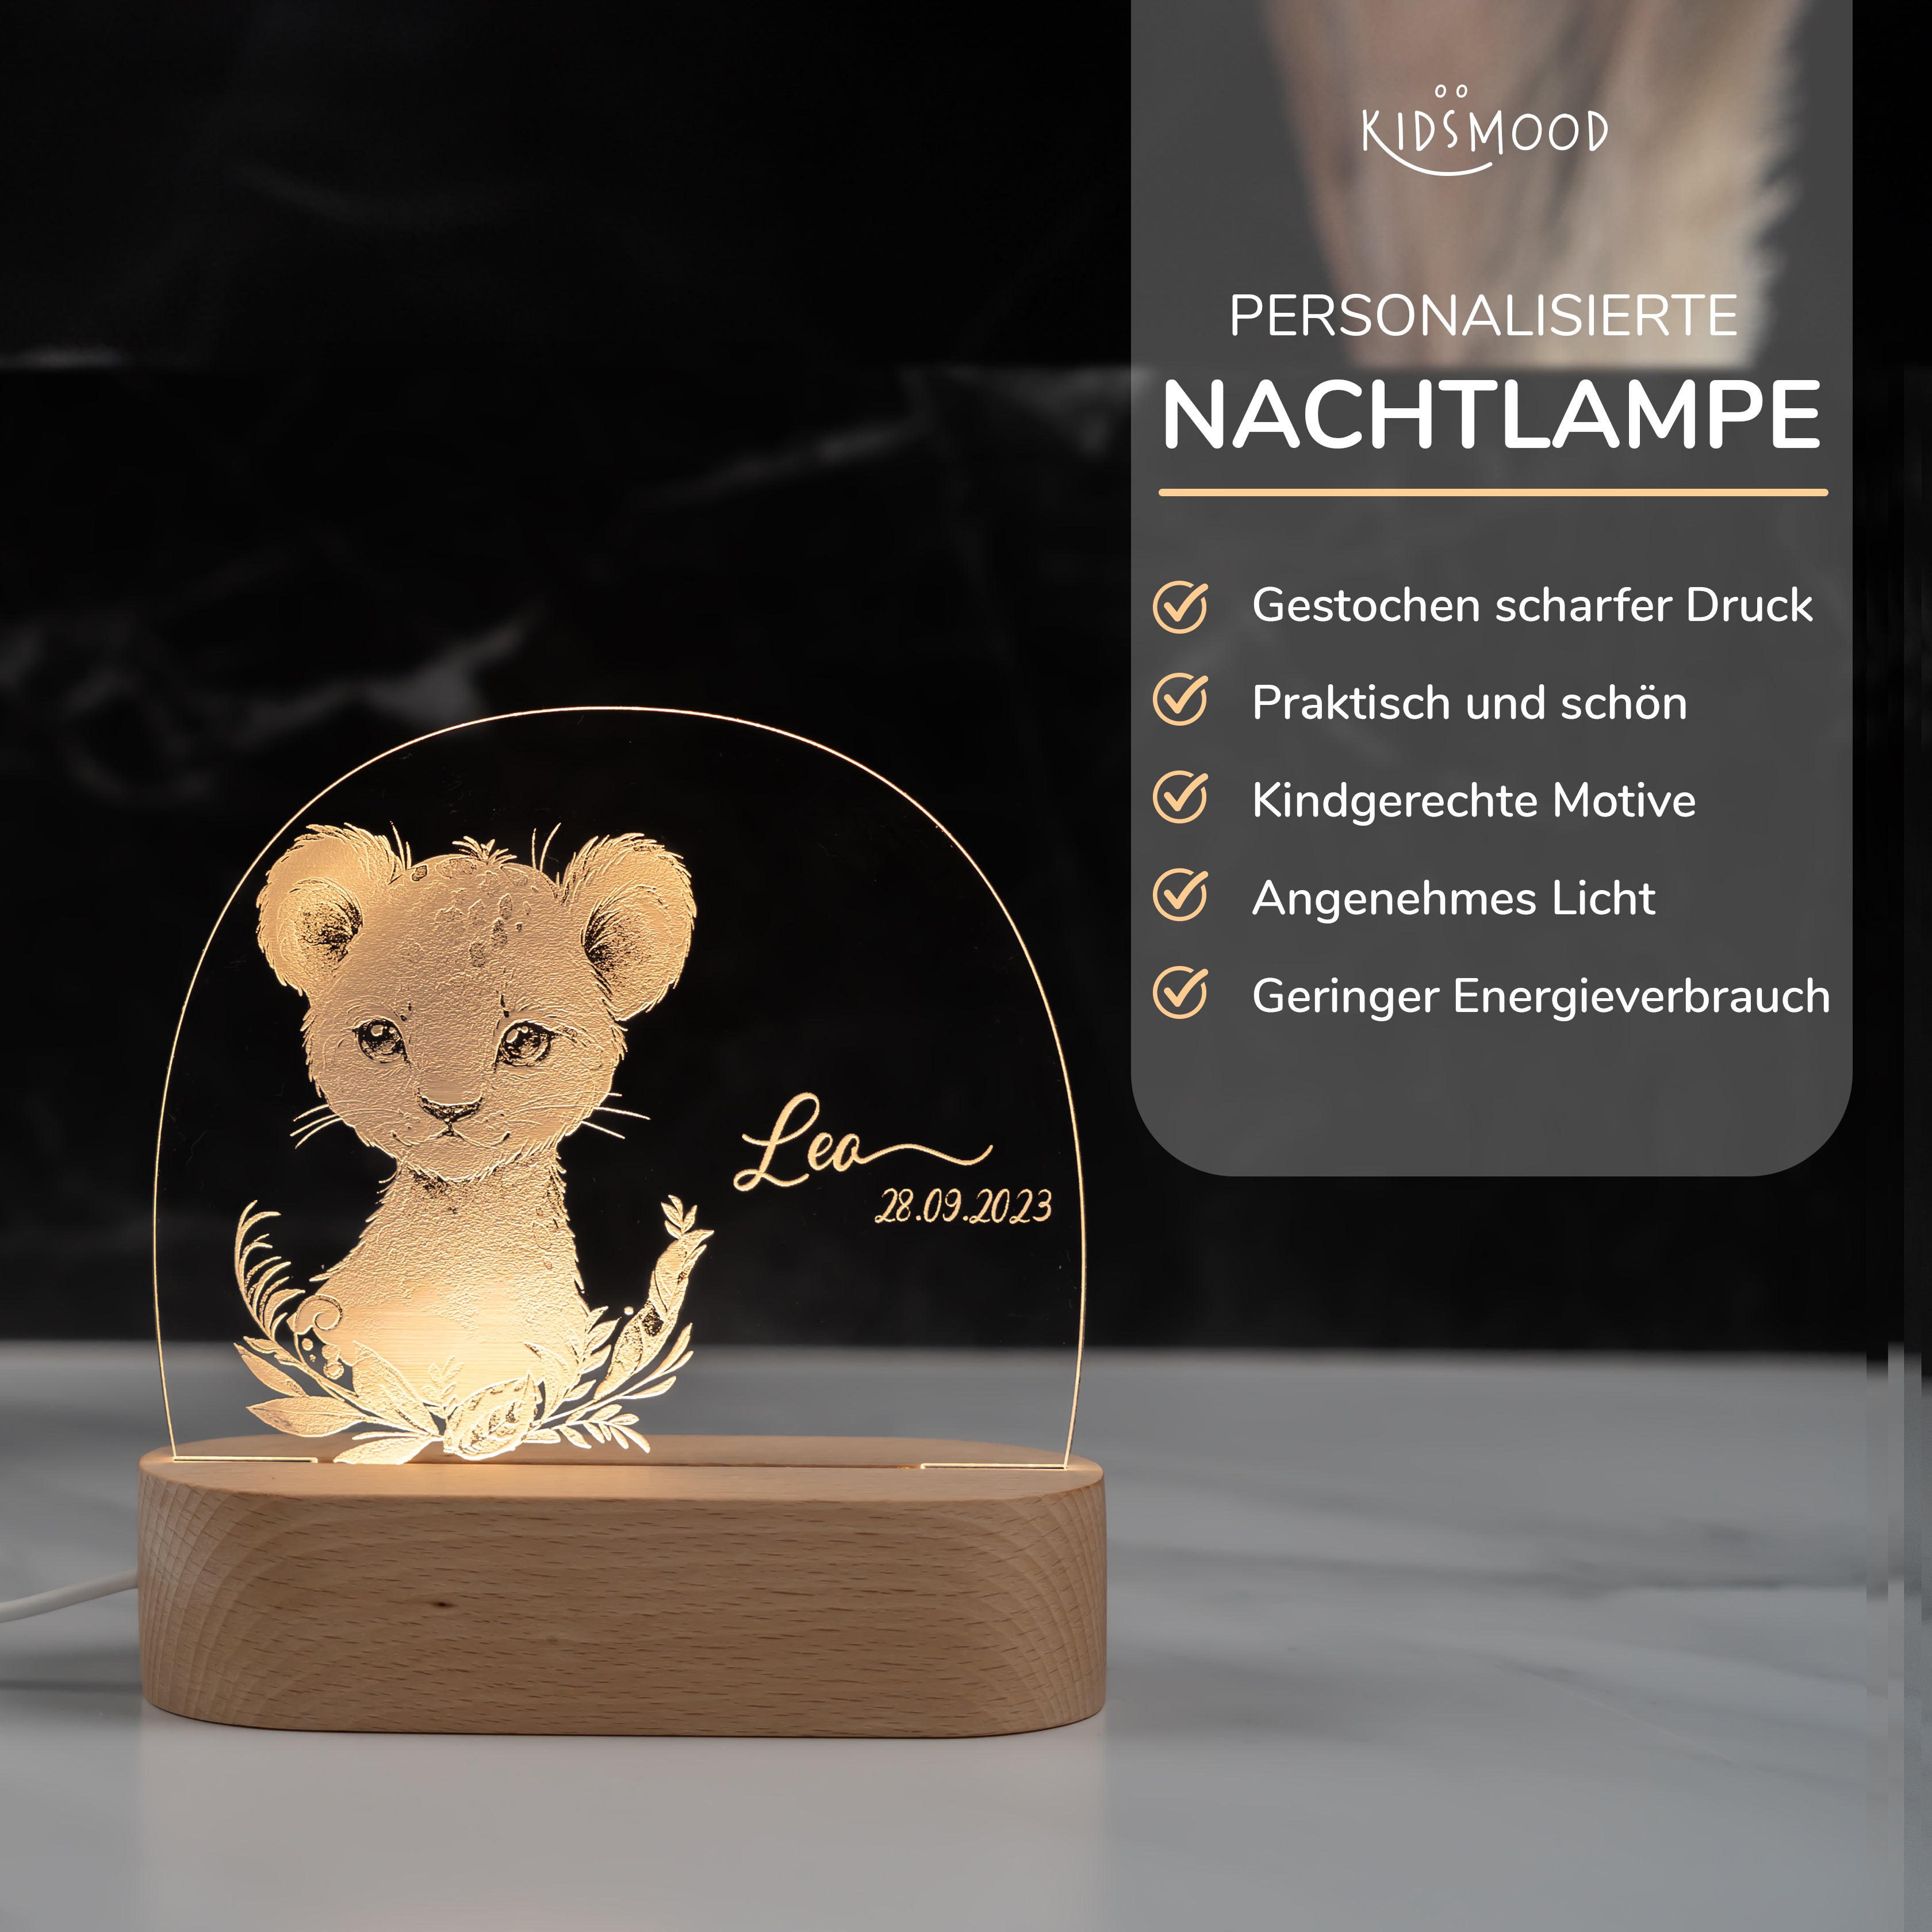 Personalisierte Nachtlampe für Kinder - Baby Löwe - Name und Geburtsdatum